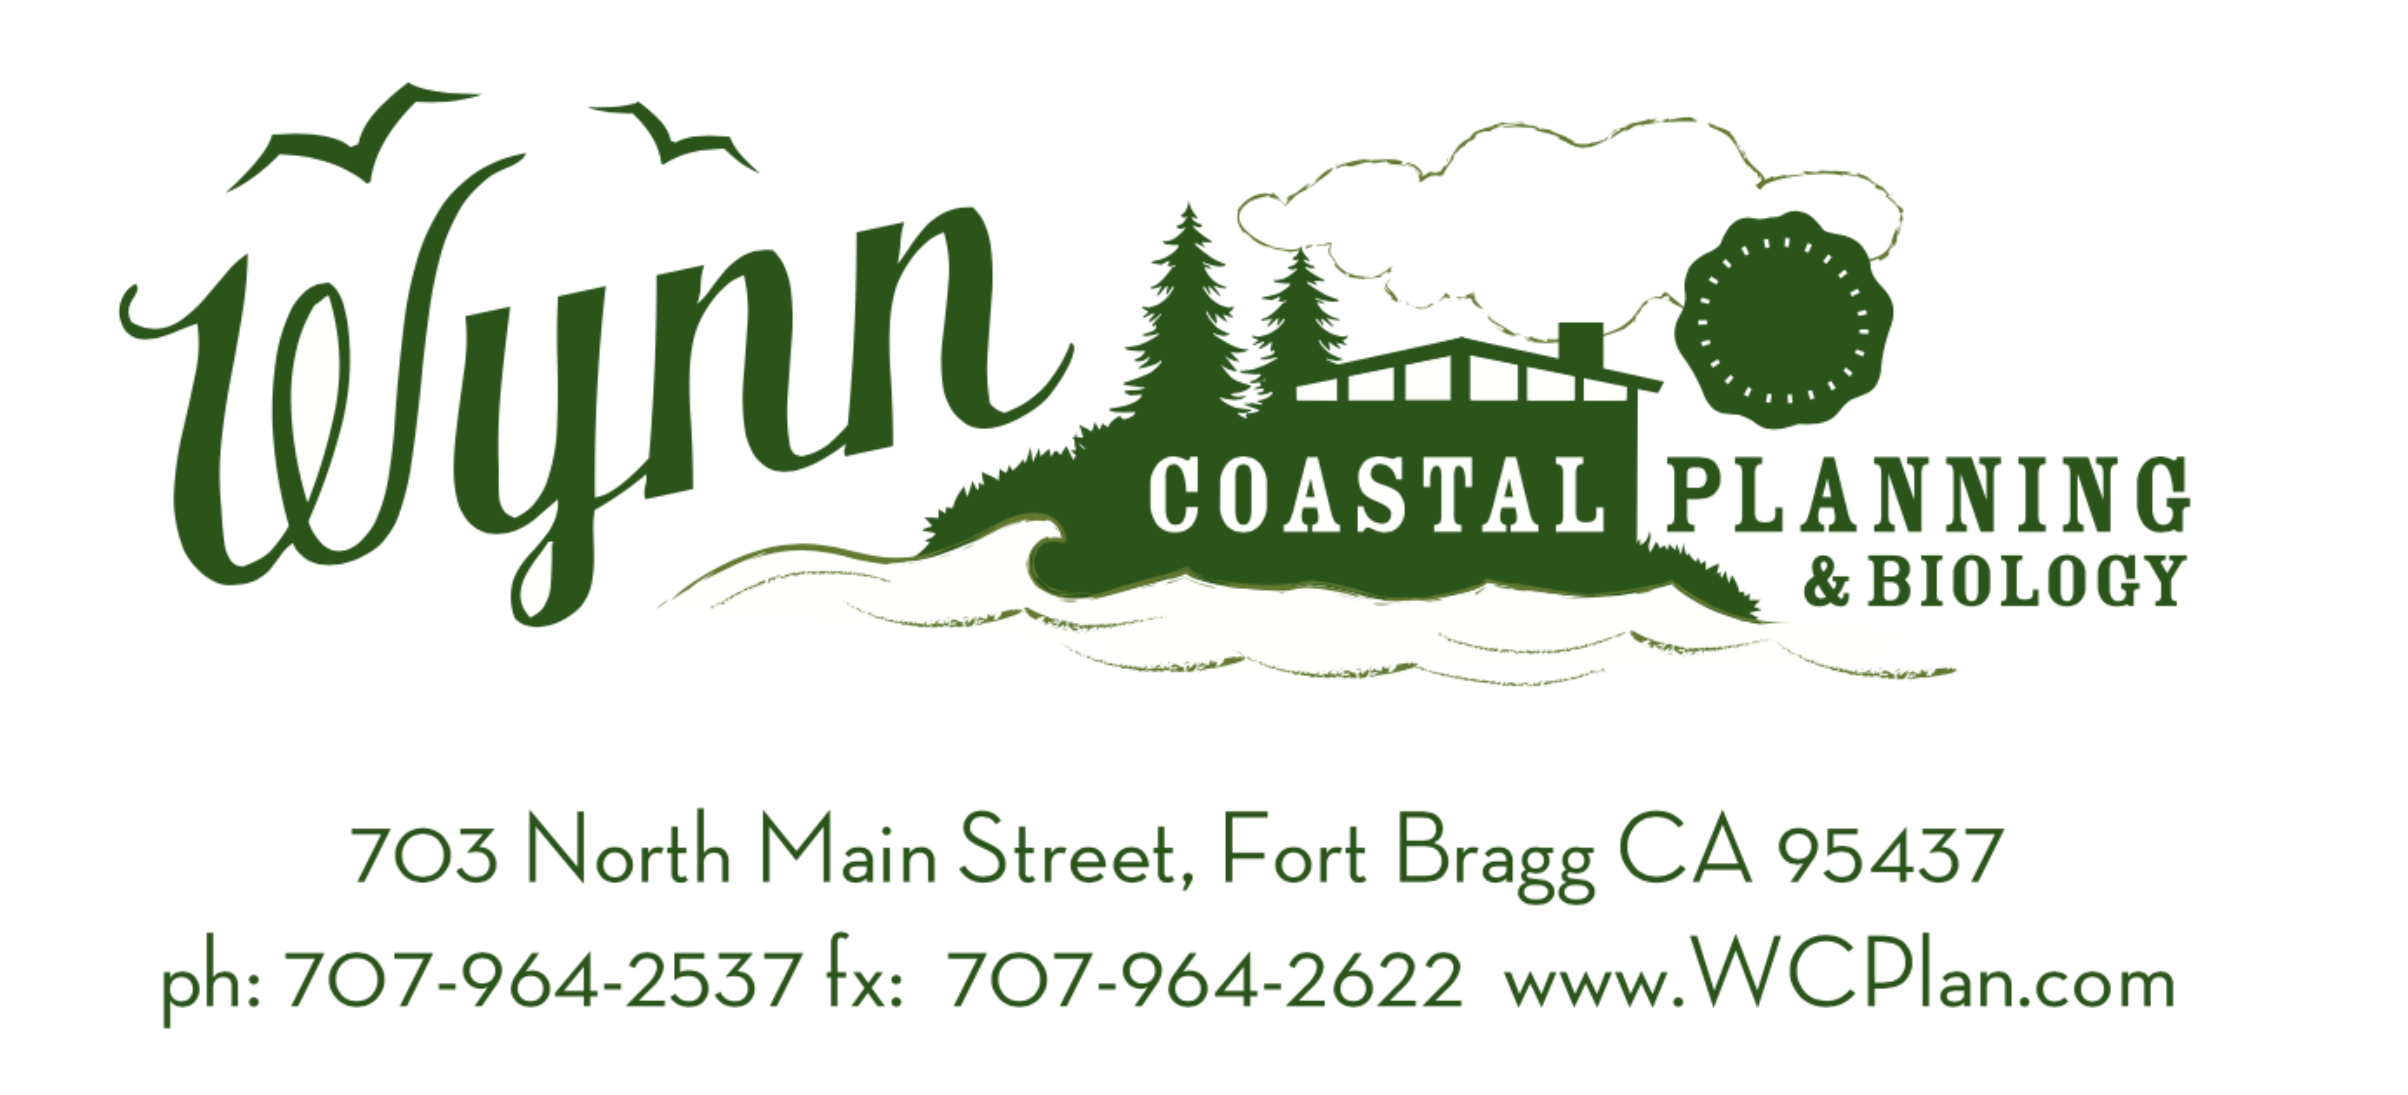 Wynn Coastal Planning &amp; Biology